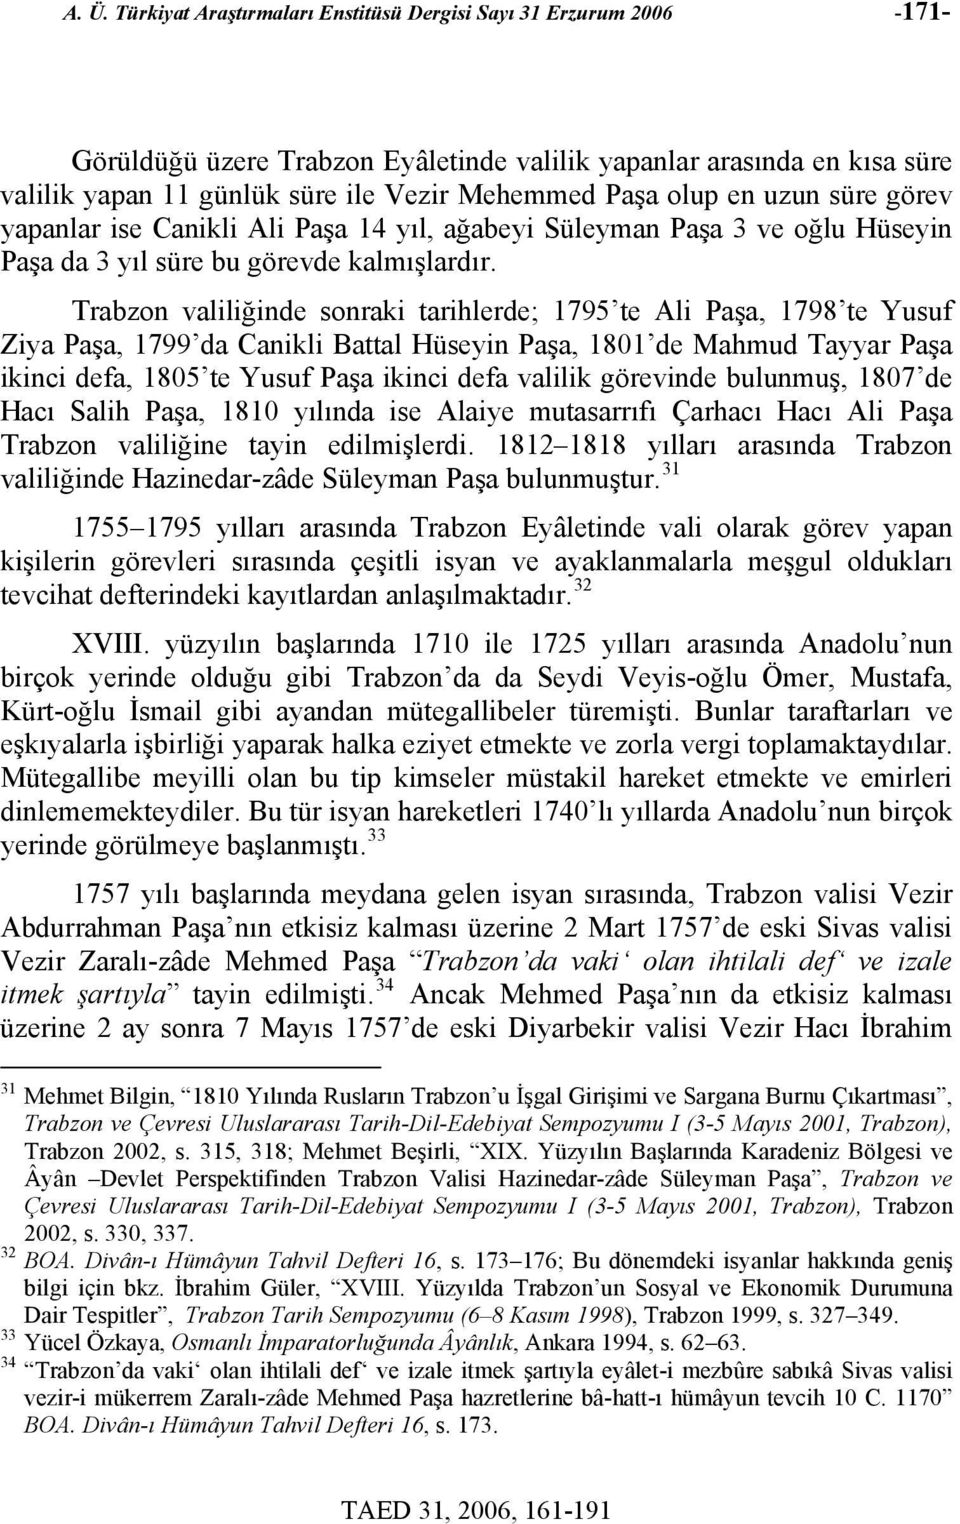 Trabzon valiliğinde sonraki tarihlerde; 1795 te Ali, 1798 te Yusuf Ziya, 1799 da Canikli Battal Hüseyin, 1801 de Mahmud Tayyar ikinci defa, 1805 te Yusuf ikinci defa valilik görevinde bulunmuş, 1807